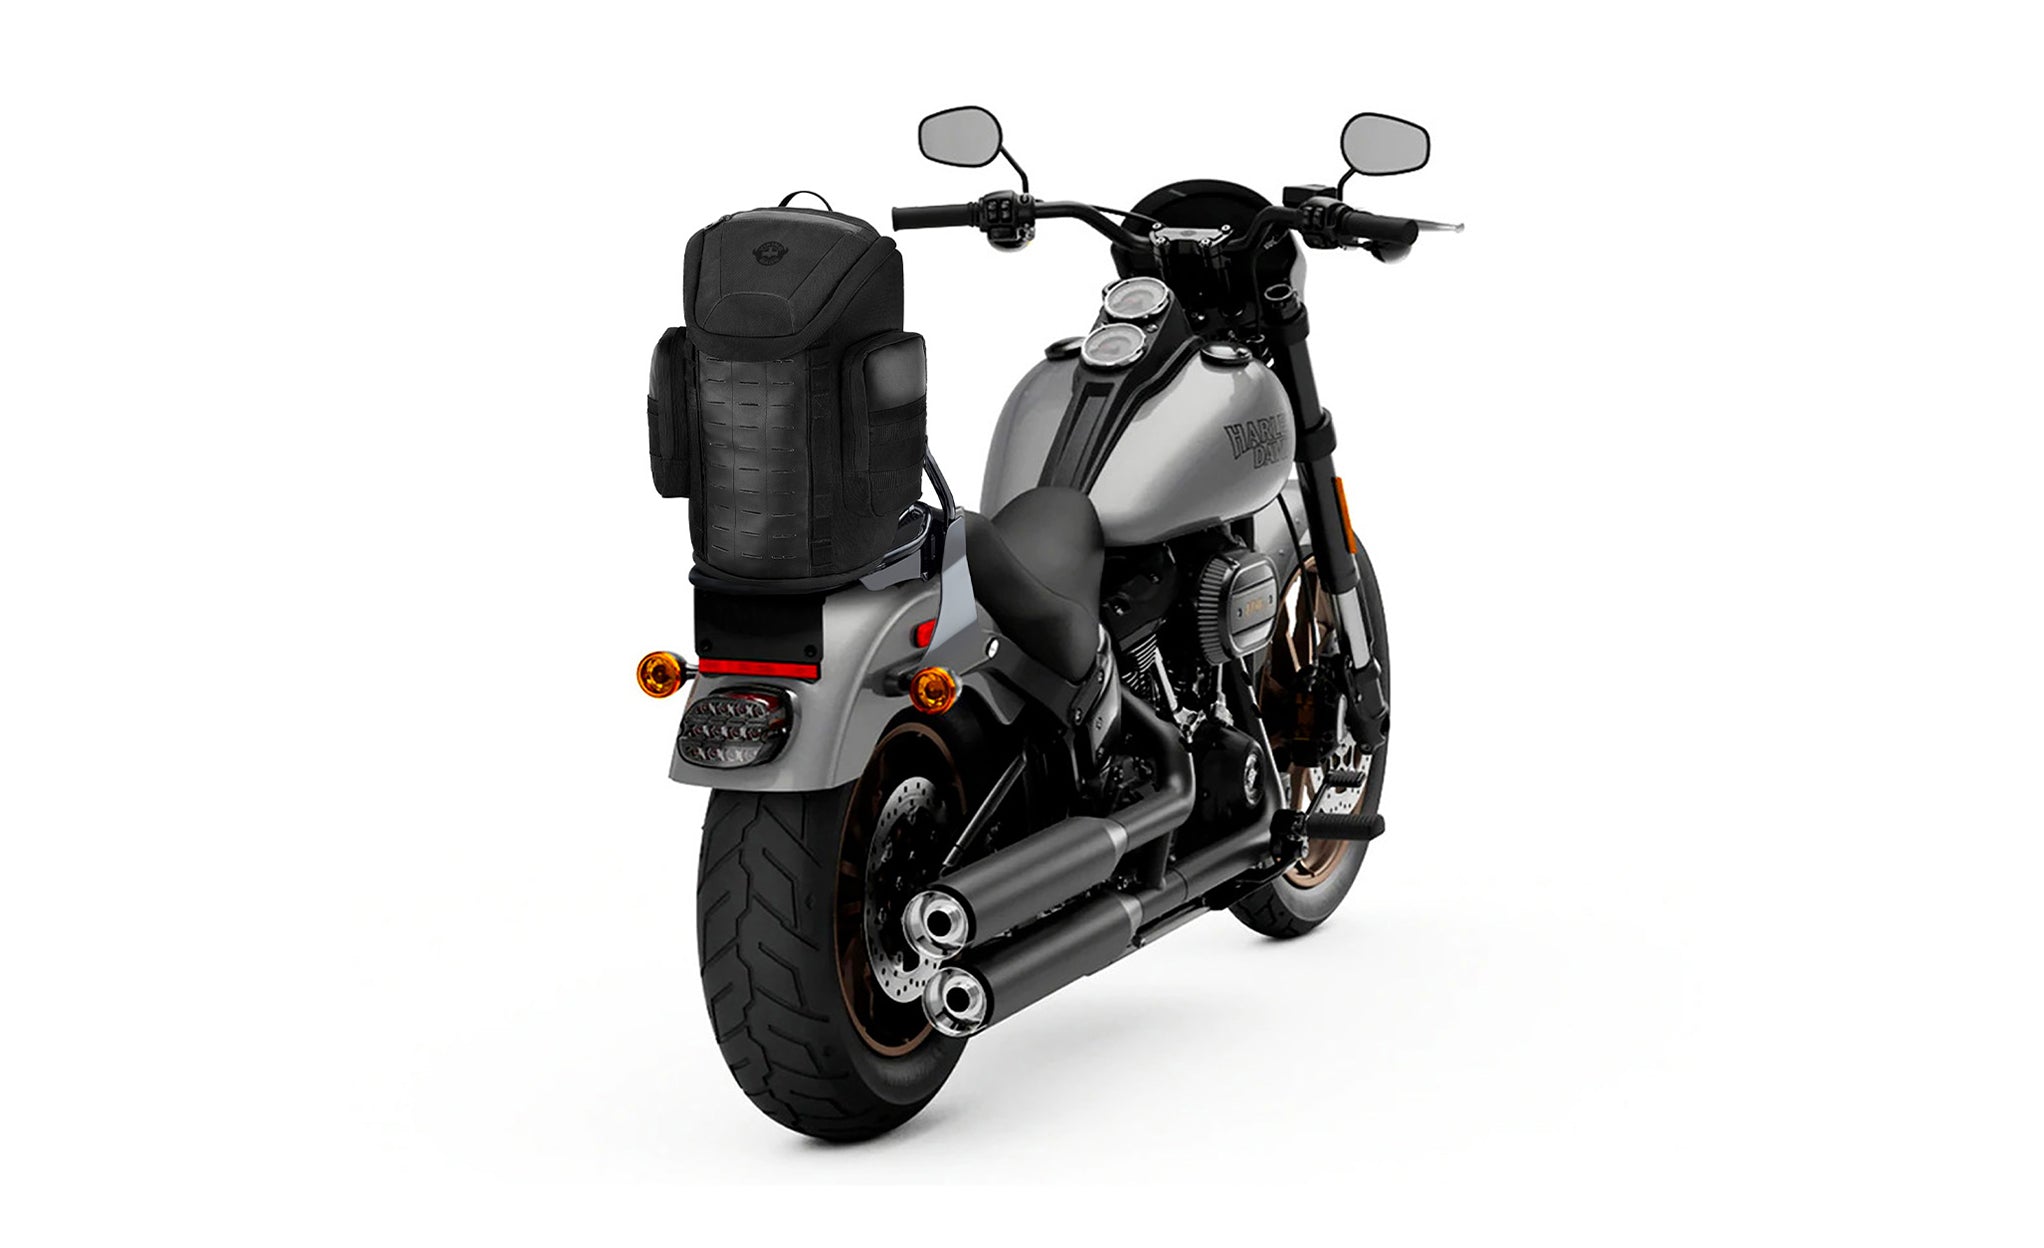 Viking Patriot Medium Kawasaki Motorcycle Sissy Bar Backpack Bag on Bike View @expand